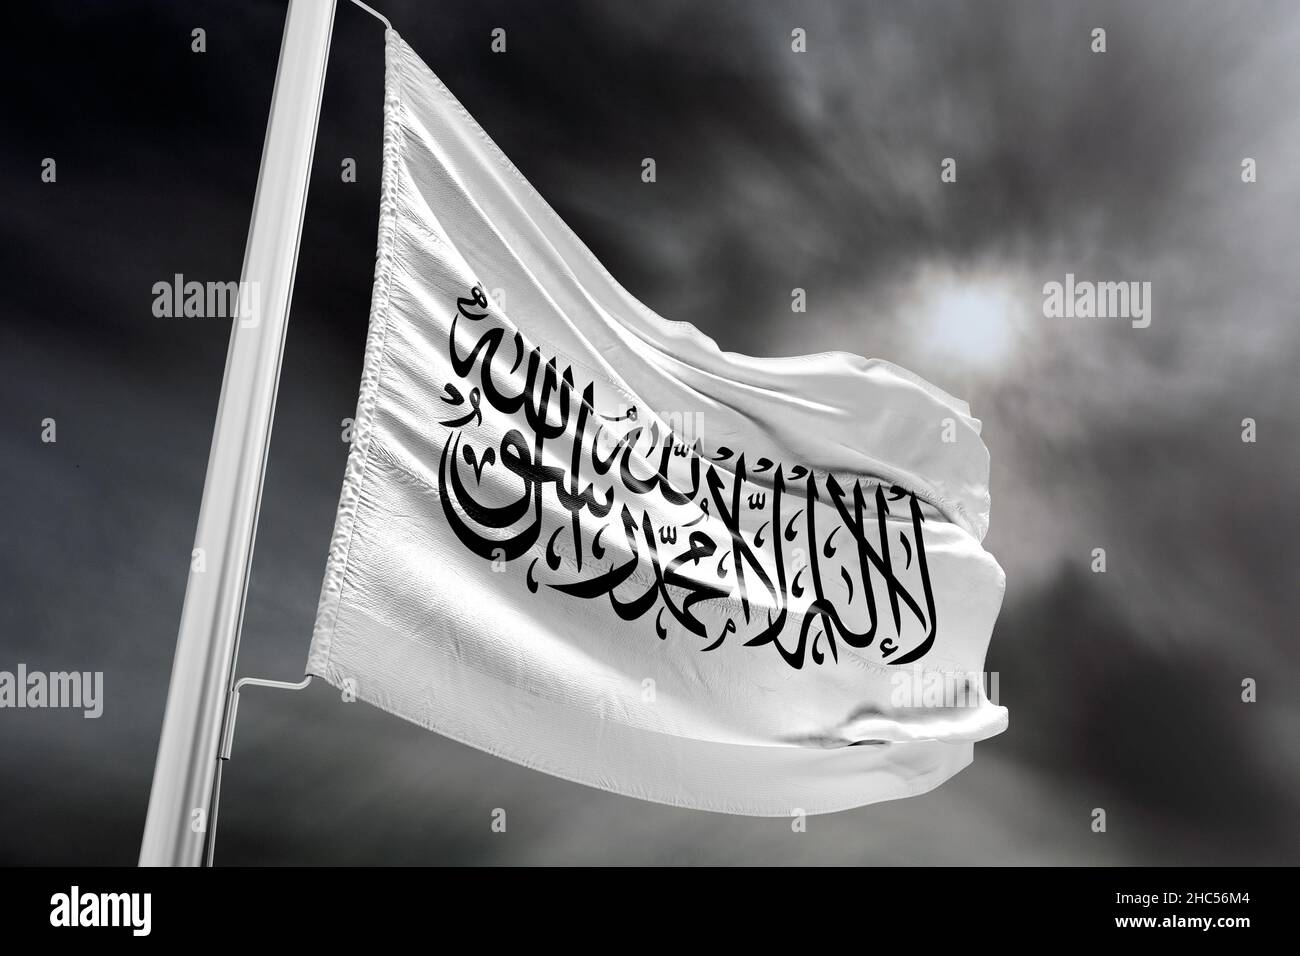 Flagge Afghanistans, Afghanistan in der Macht der Taliban. Auf der weißen Flagge steht die Inschrift „Shahada“. Stockfoto